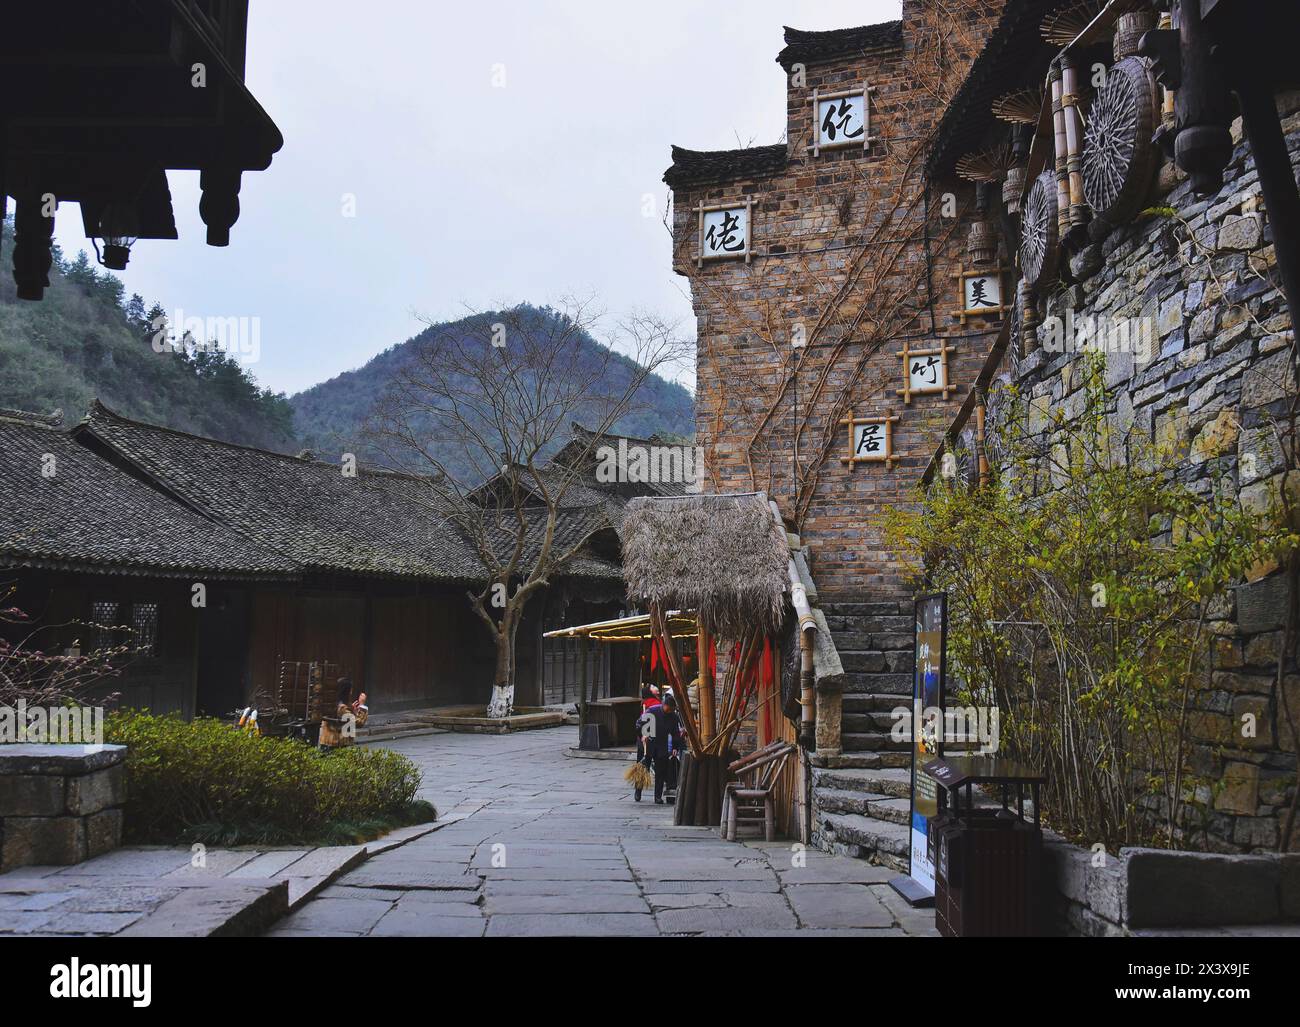 Lo splendido villaggio di Wujiang, un villaggio culturale del gruppo etnico Miao minoritario in Cina. Città di Zunyi, provincia di Guizhou, Cina Foto Stock